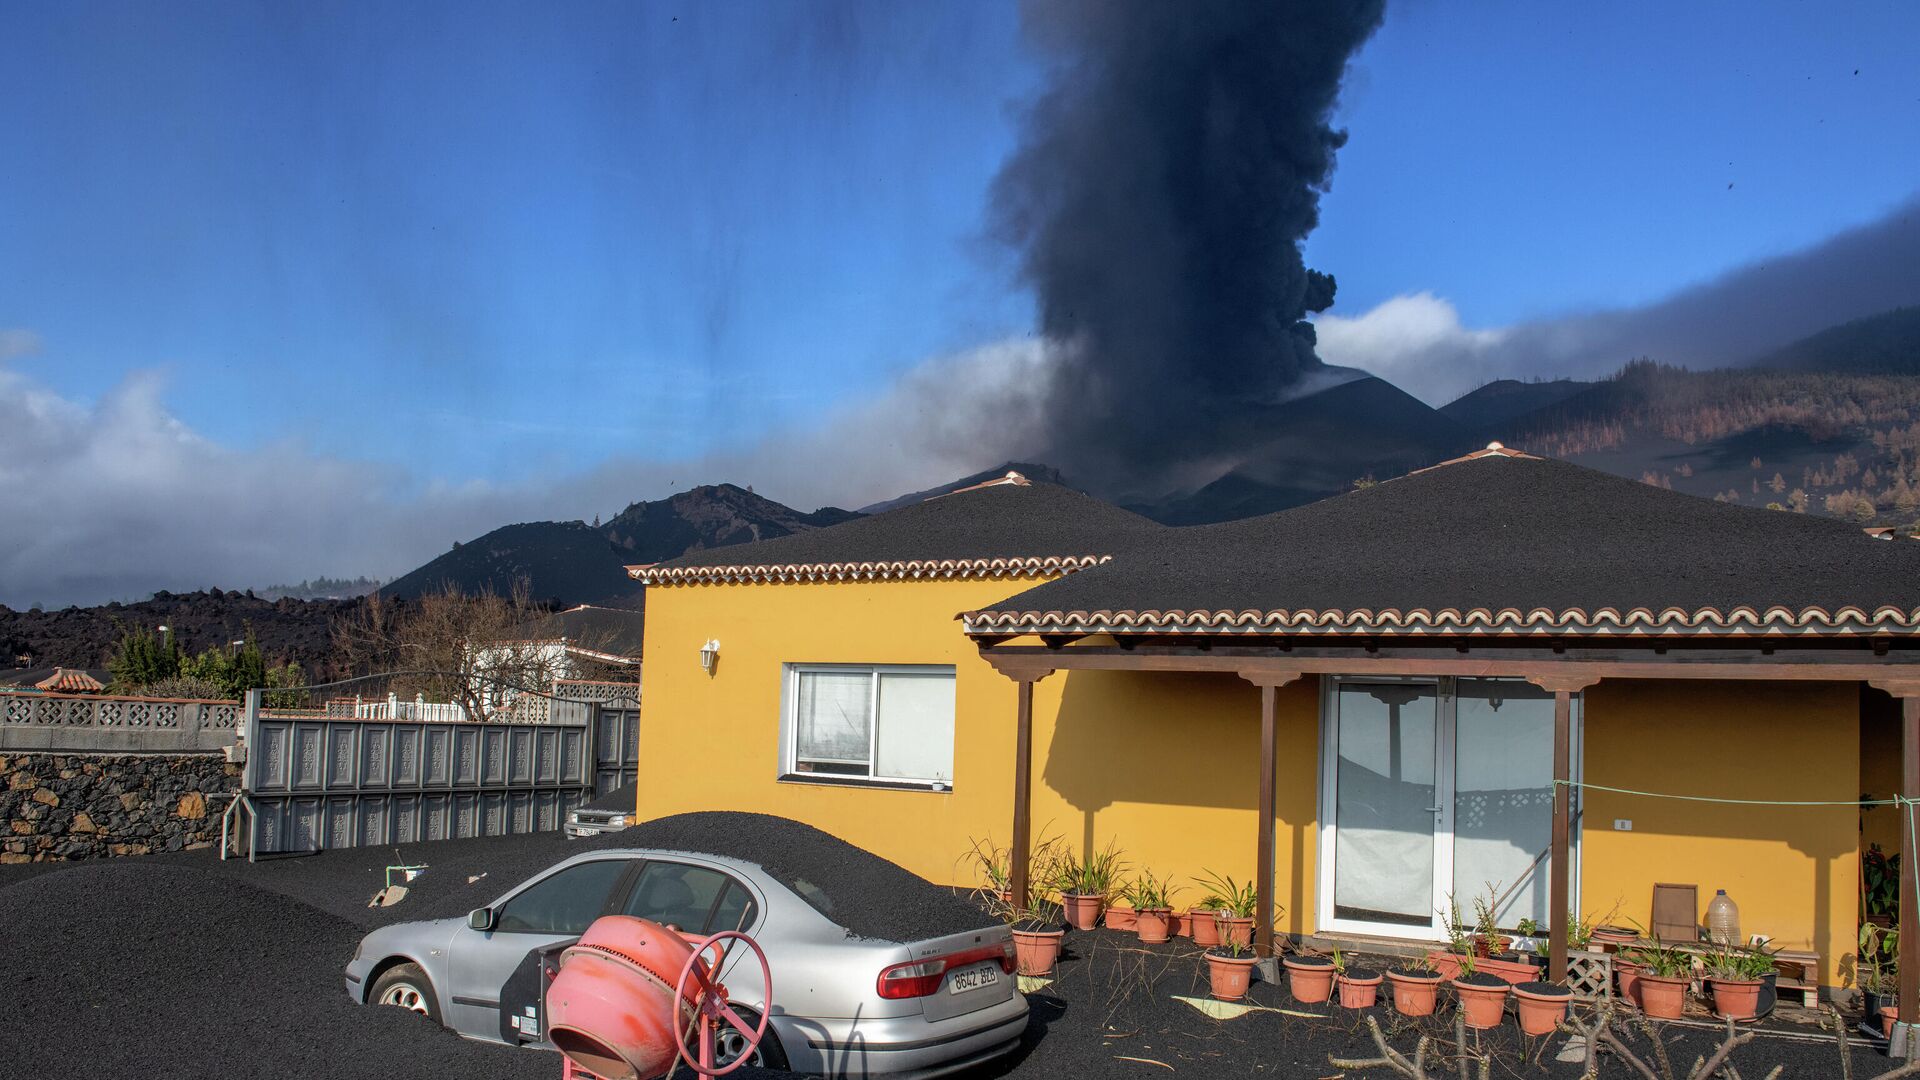 Дом, покрытый пеплом от извержения вулкана на Канарских островах  - РИА Новости, 1920, 10.10.2021